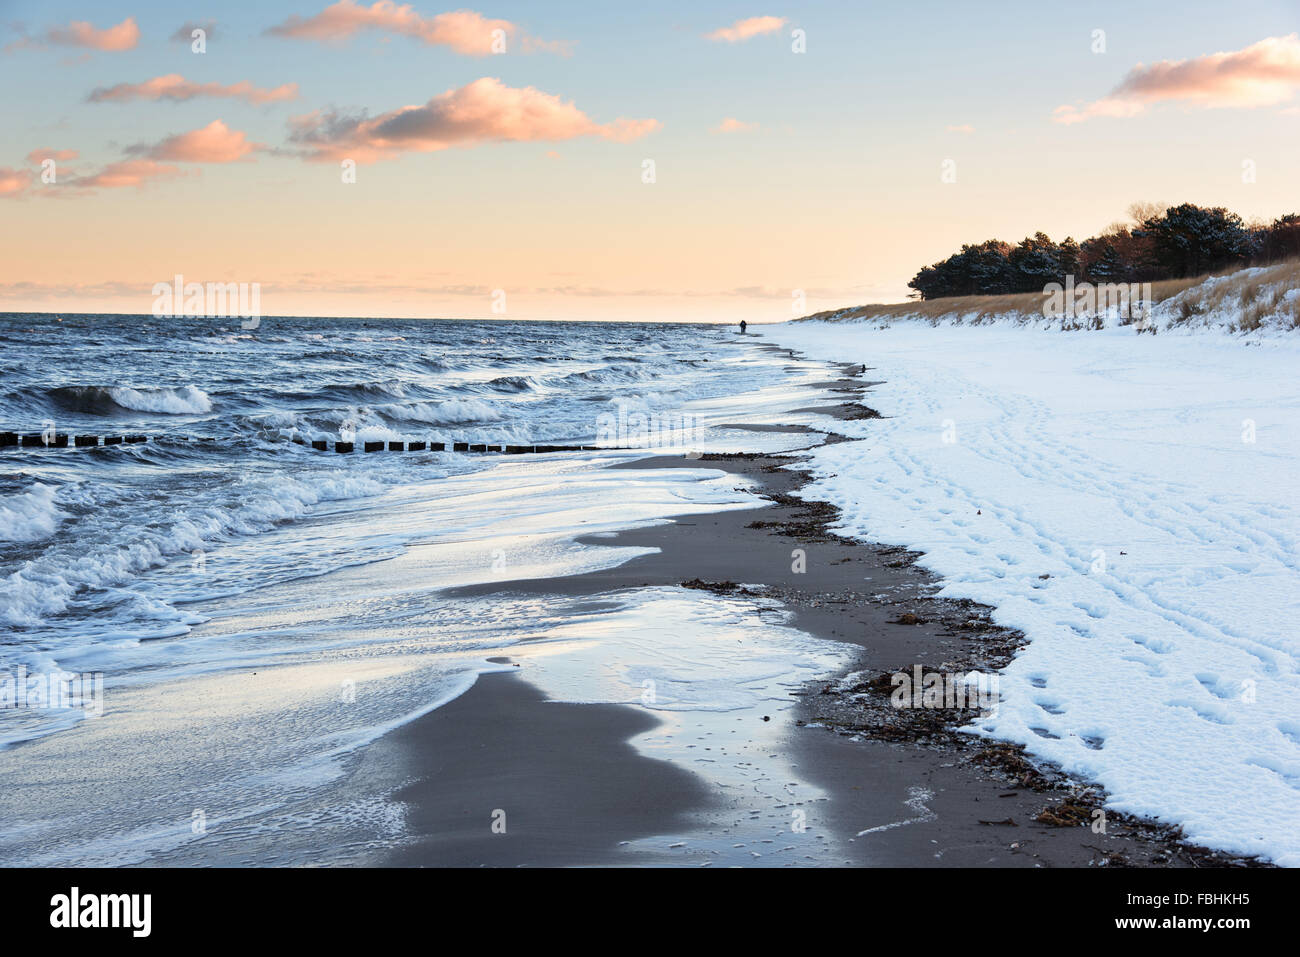 Lever du soleil, la plage, l'hiver, la neige, la marche, la mer Baltique, Darss, Zingst, Allemagne Banque D'Images